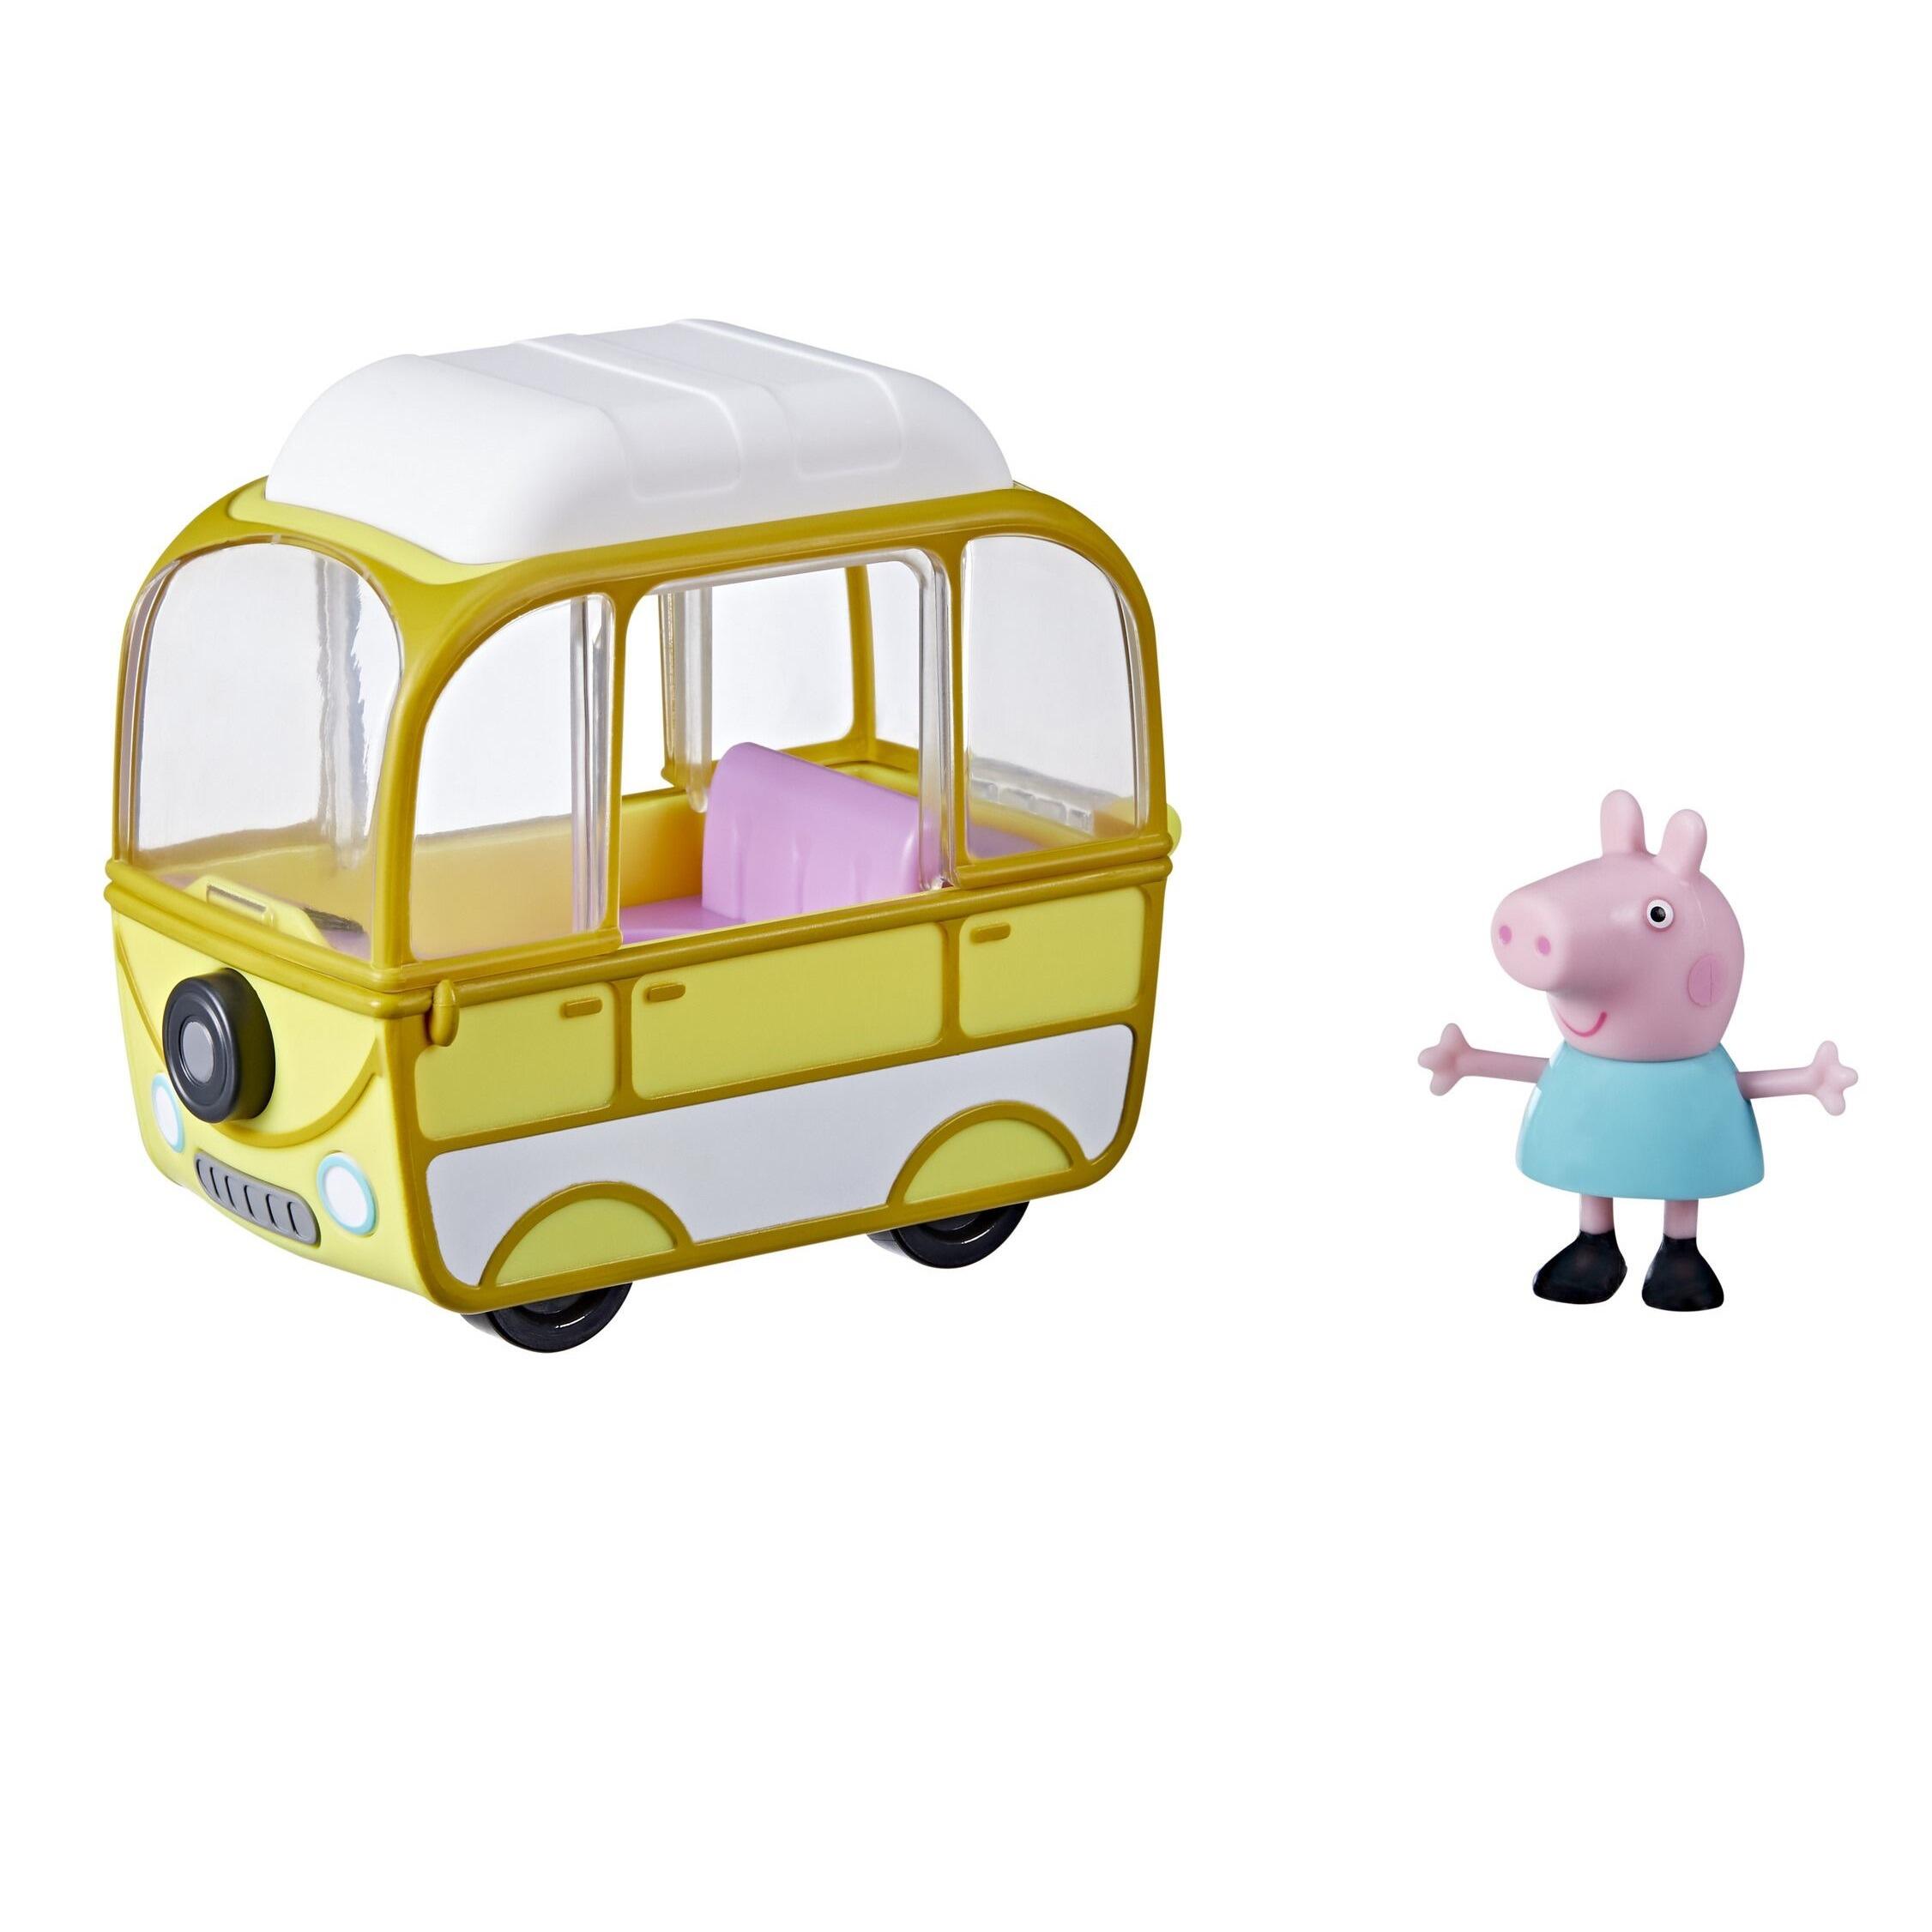 Peppa Pig Vehicles Little Campervan